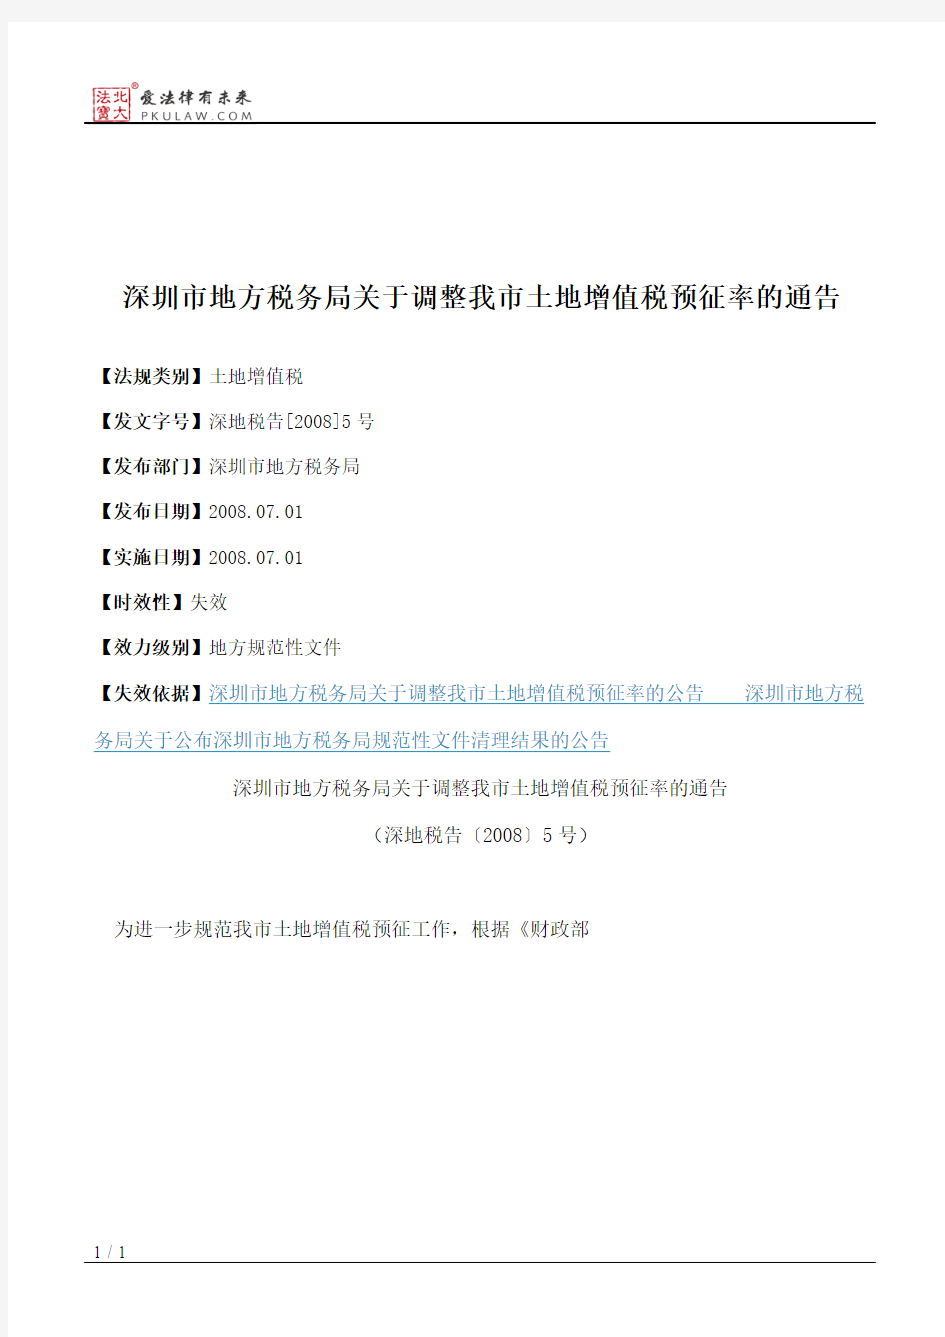 深圳市地方税务局关于调整我市土地增值税预征率的通告